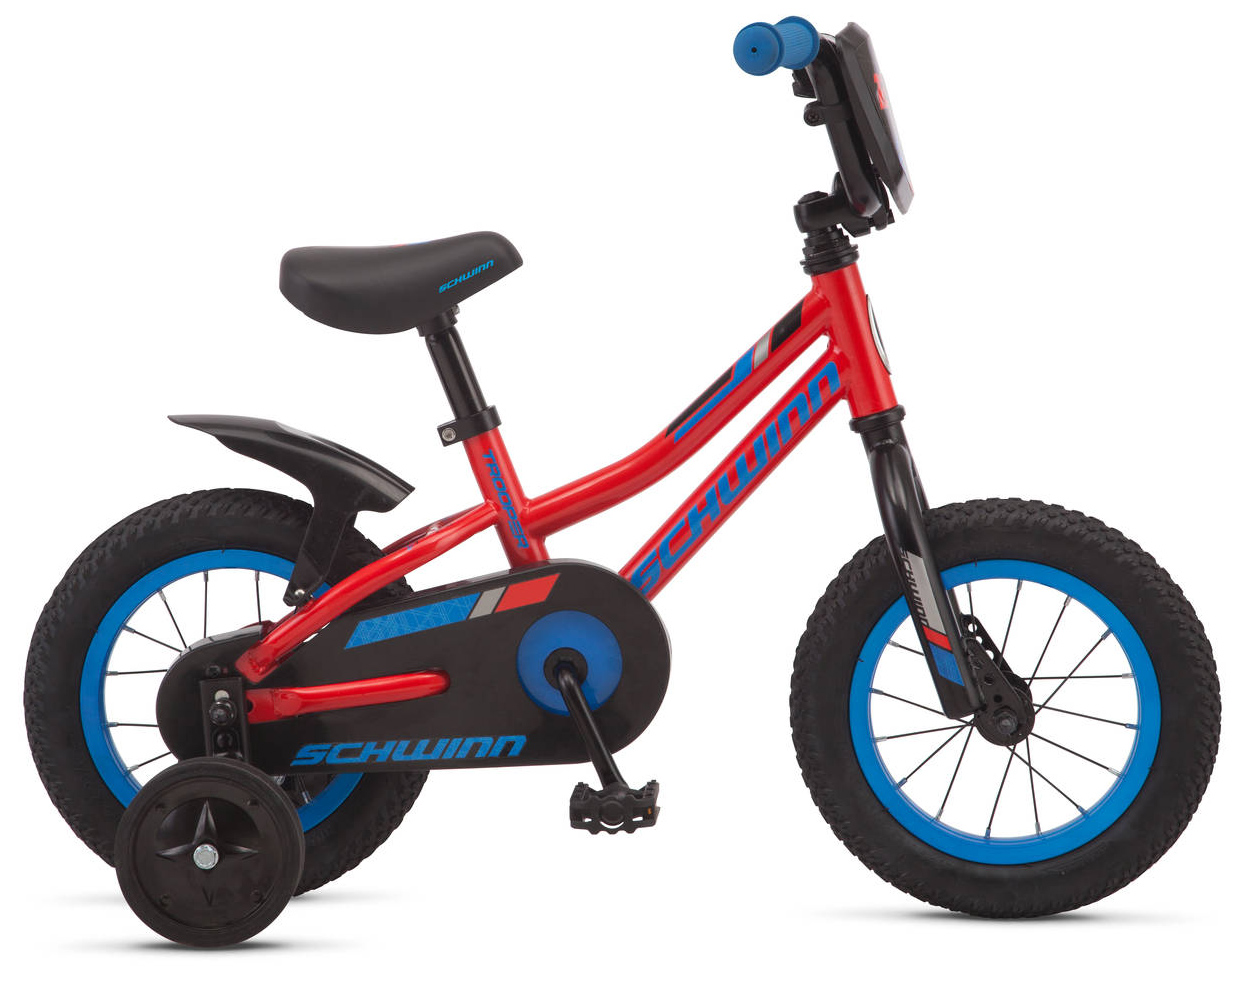  Отзывы о Детском велосипеде Schwinn Trooper 2020